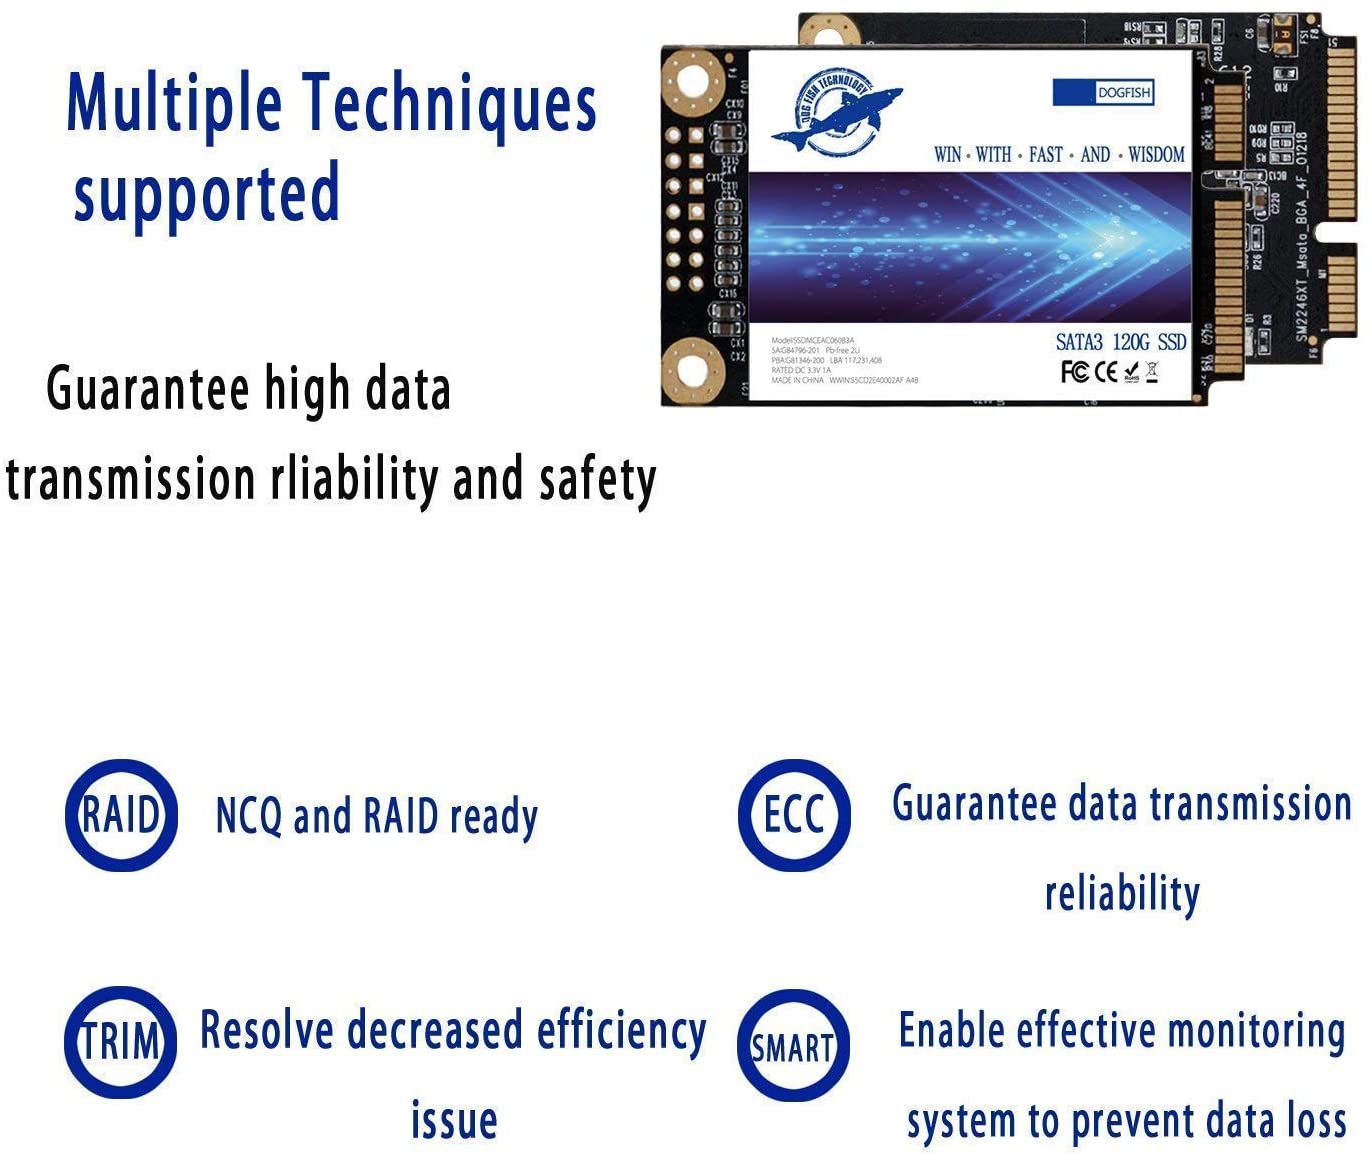 Dogfish Msata 60GB-2TB Internal State Drive Mini Sata SSD Disk – Dogfish Technology